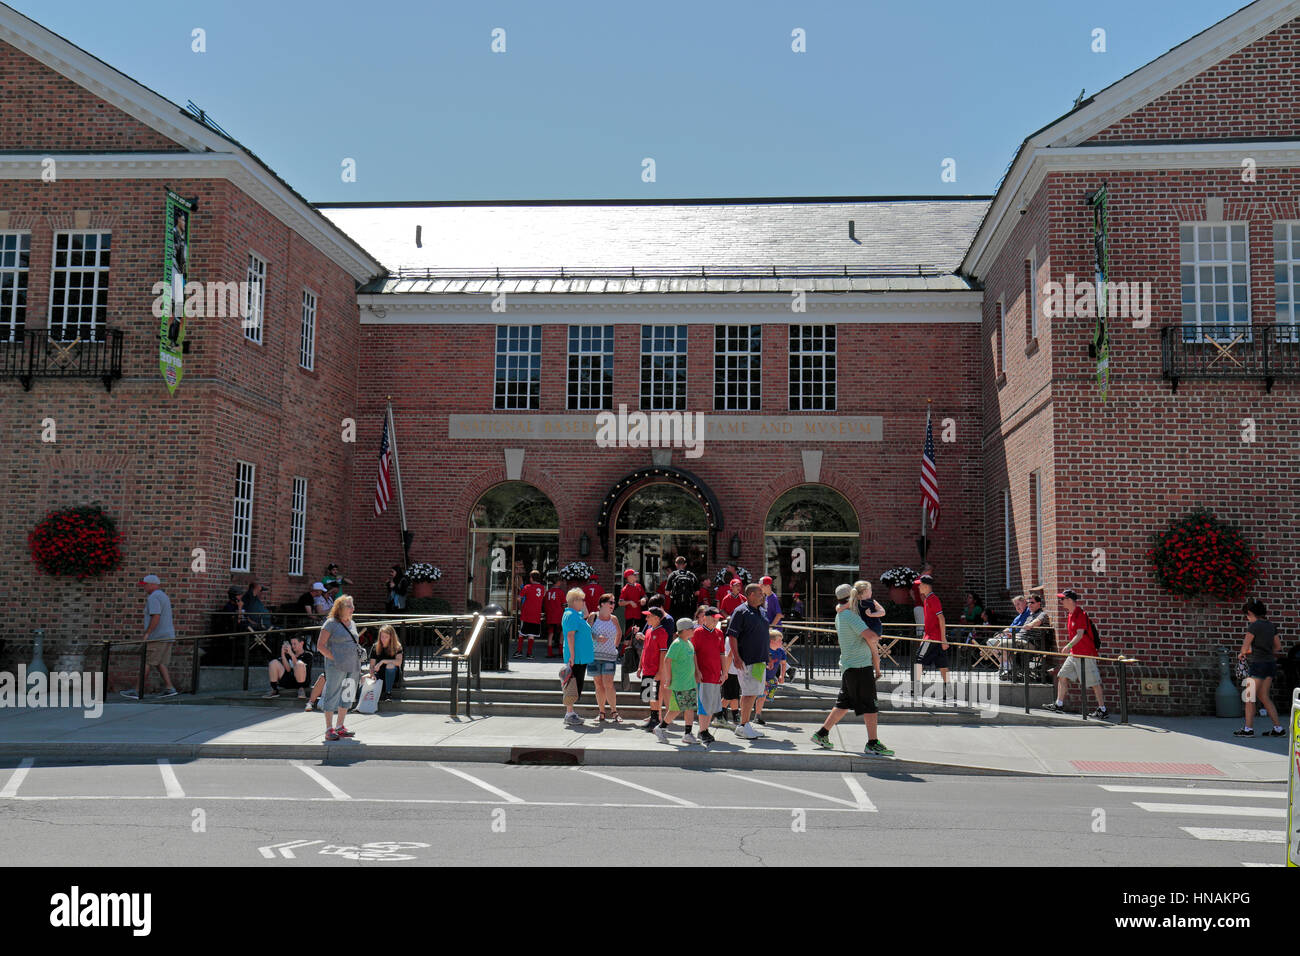 Haupteingang, der Major League Baseball Hall Of Fame im historischen Cooperstown, Otsego County, New York, Vereinigte Staaten von Amerika. Stockfoto